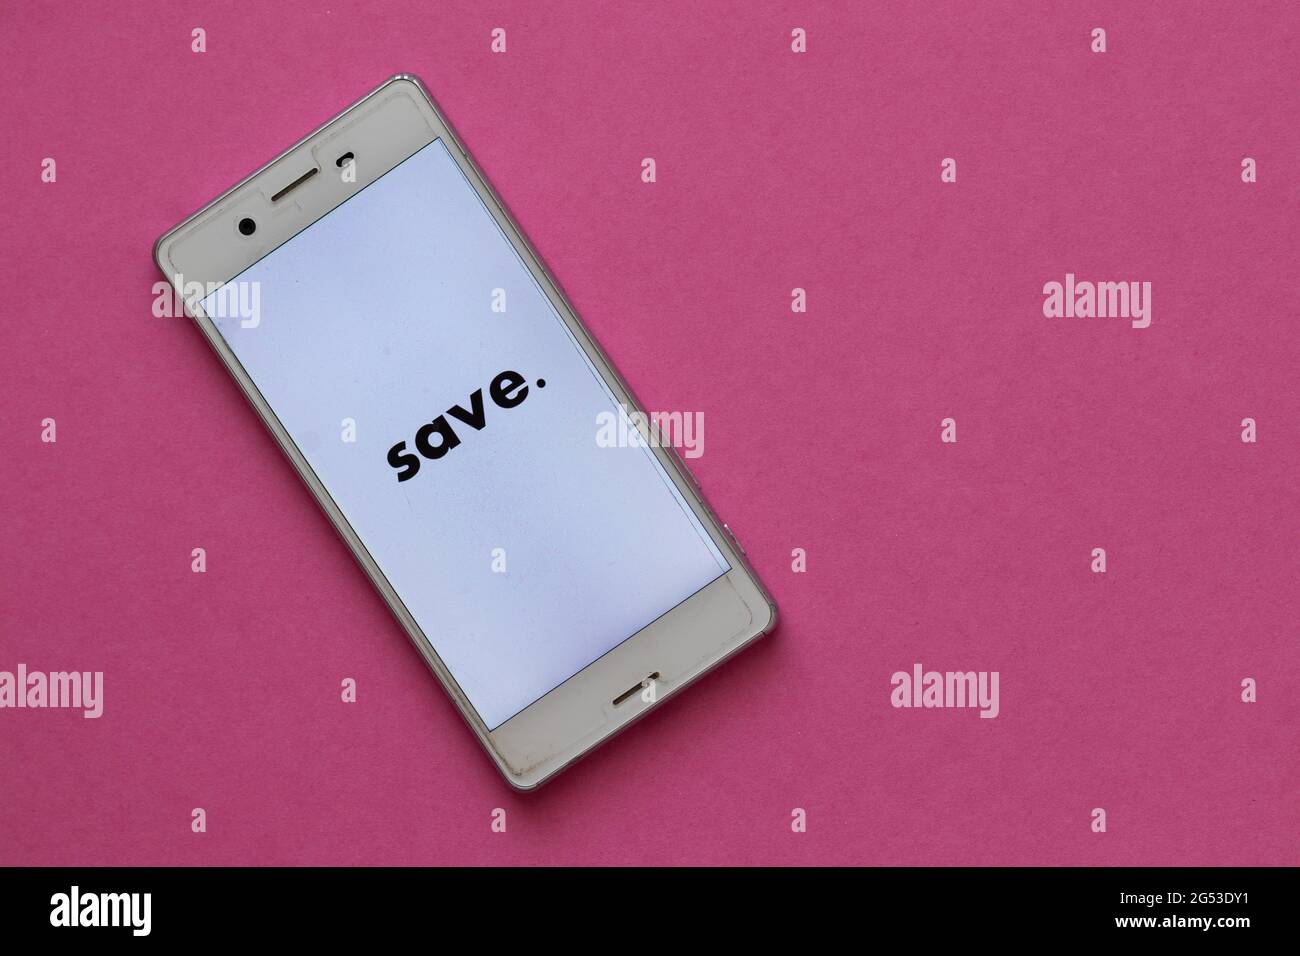 Telefono cellulare bianco su sfondo rosa, la parola "Salva" è scritta sullo  schermo Foto stock - Alamy